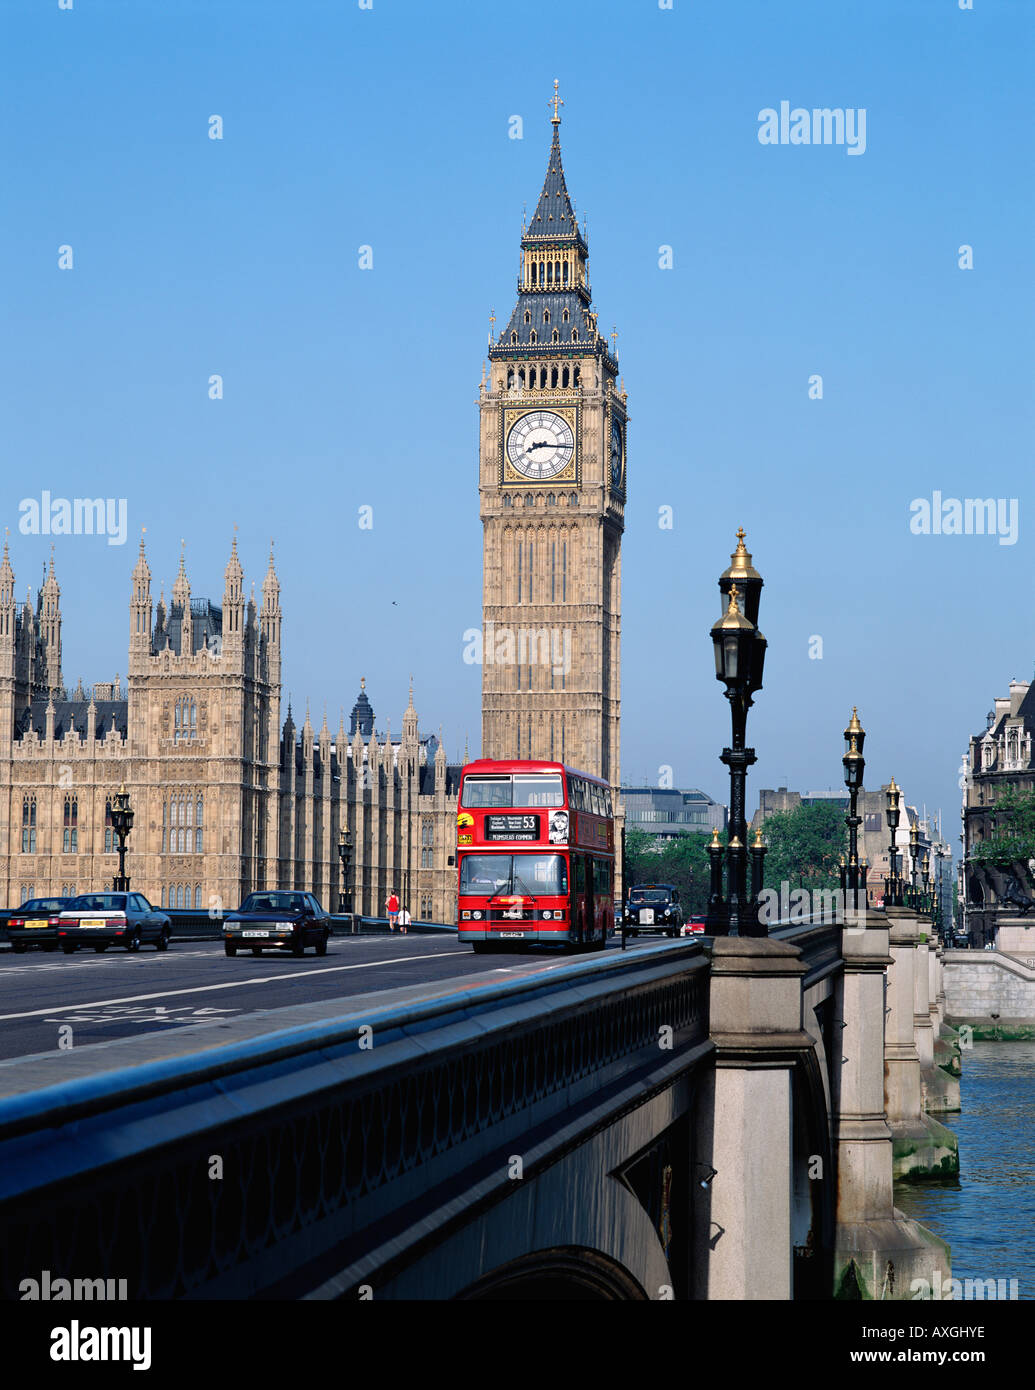 Bus à impériale rouge traversant le pont de Westminster en face de Big Ben et les chambres du Parlement, Londres, Angleterre, RU, FR Banque D'Images